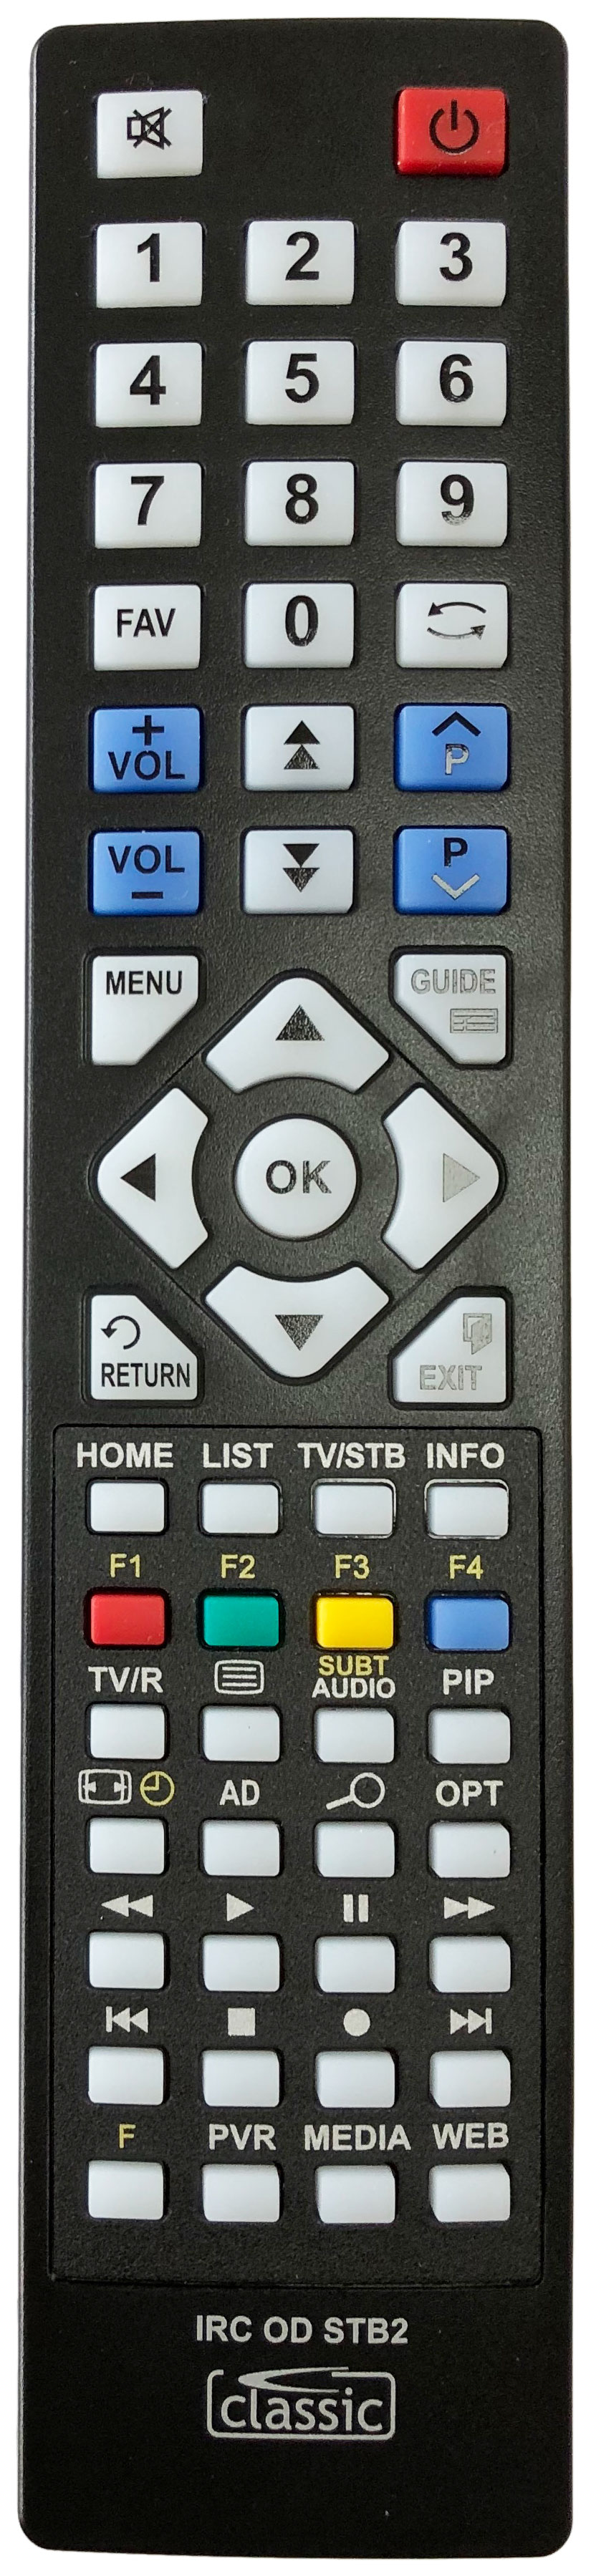 ALBA CDVB5 Remote Control